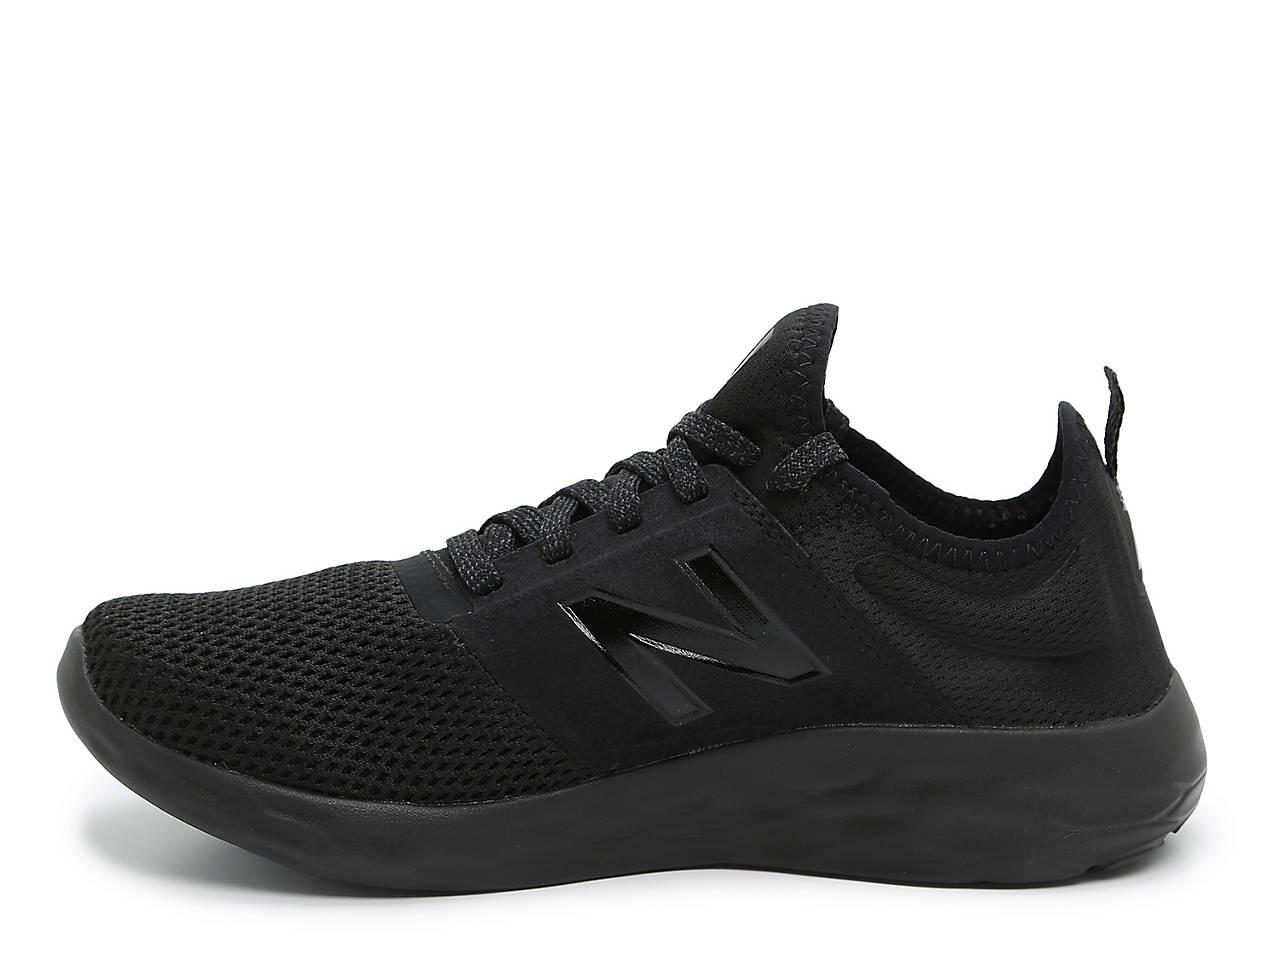 New Balance Synthetic Fresh Foam Spt Sneaker in Black for Men - Lyst